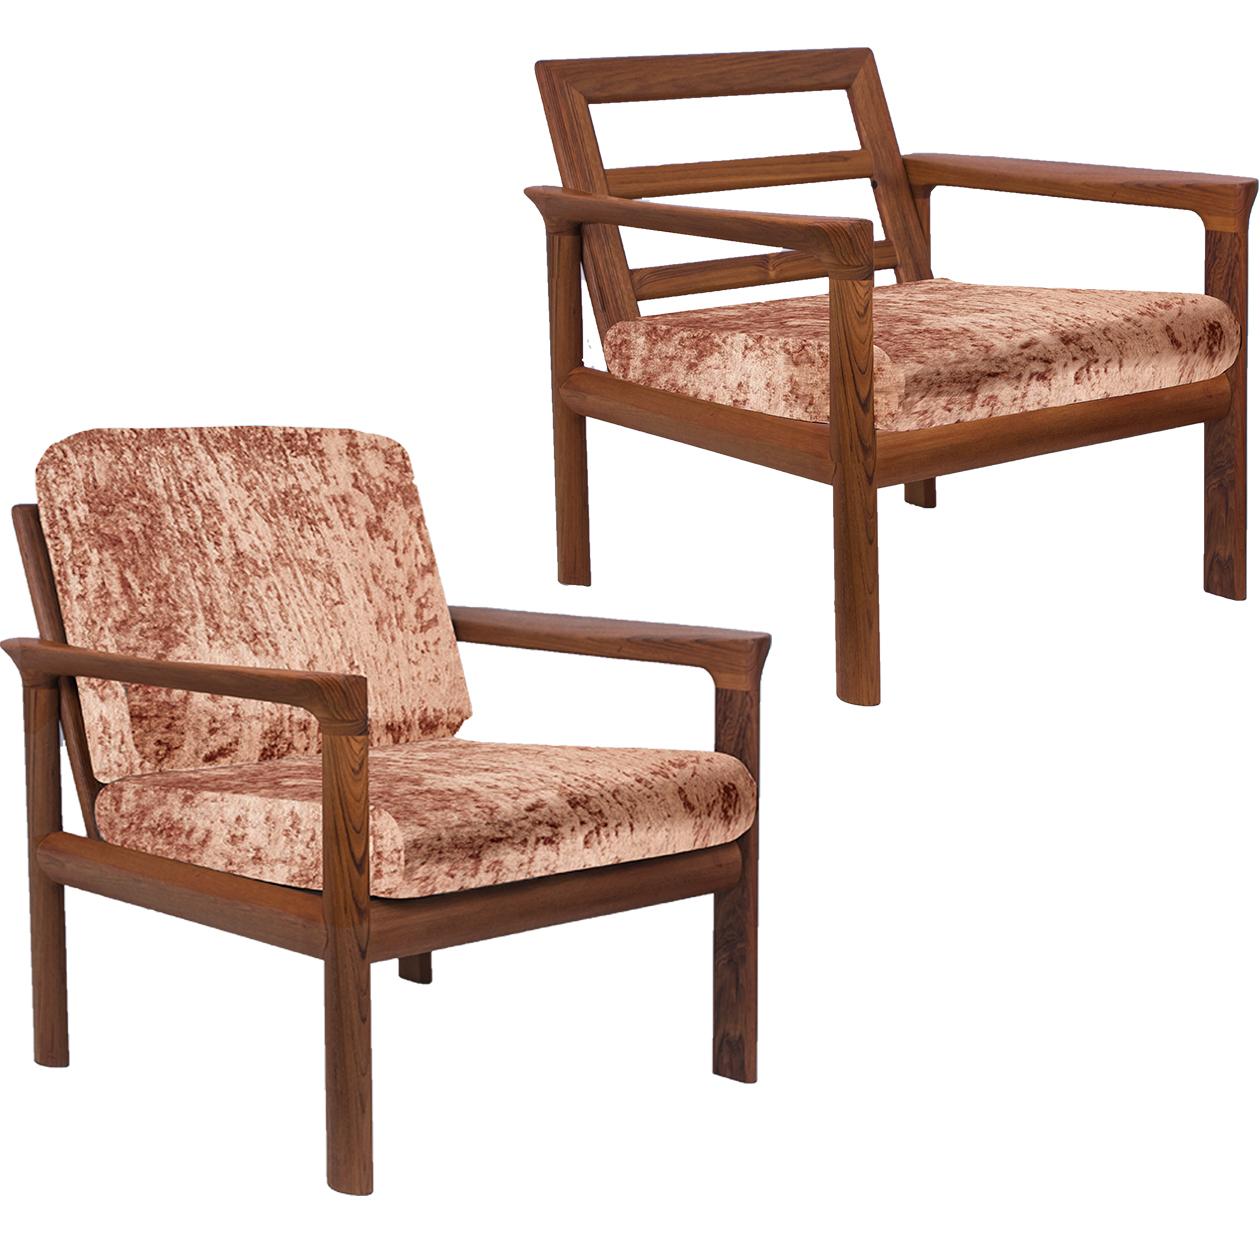 Pair of New Velvet Upholstered Sculptural Easy Chairs by Sven Ellekaer, 1960s For Sale 4